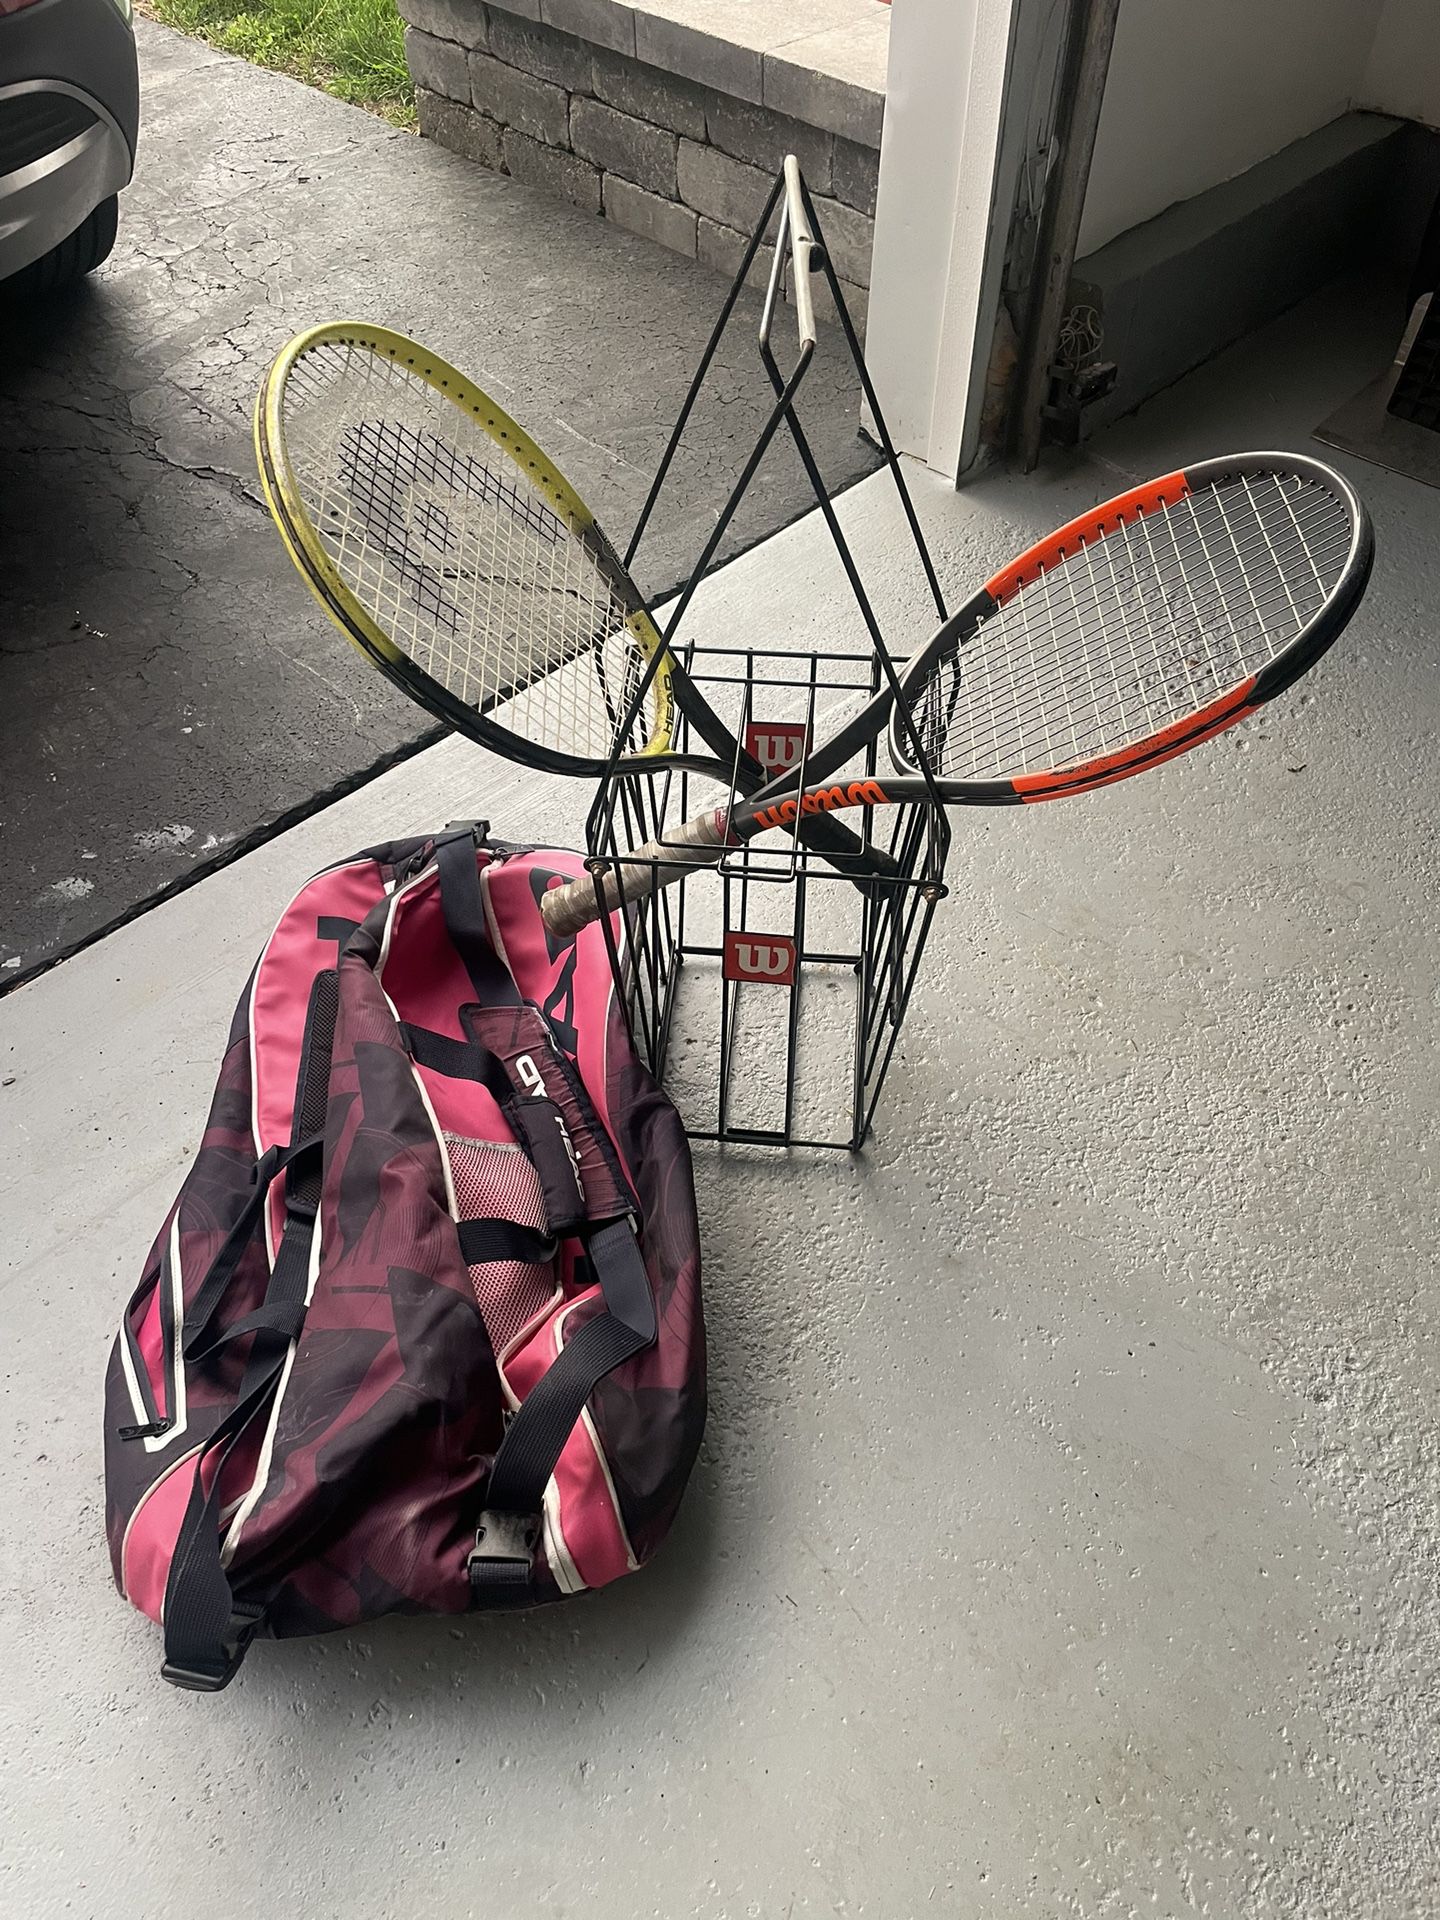 Tennis  Rackets, Bag And Ball Basket